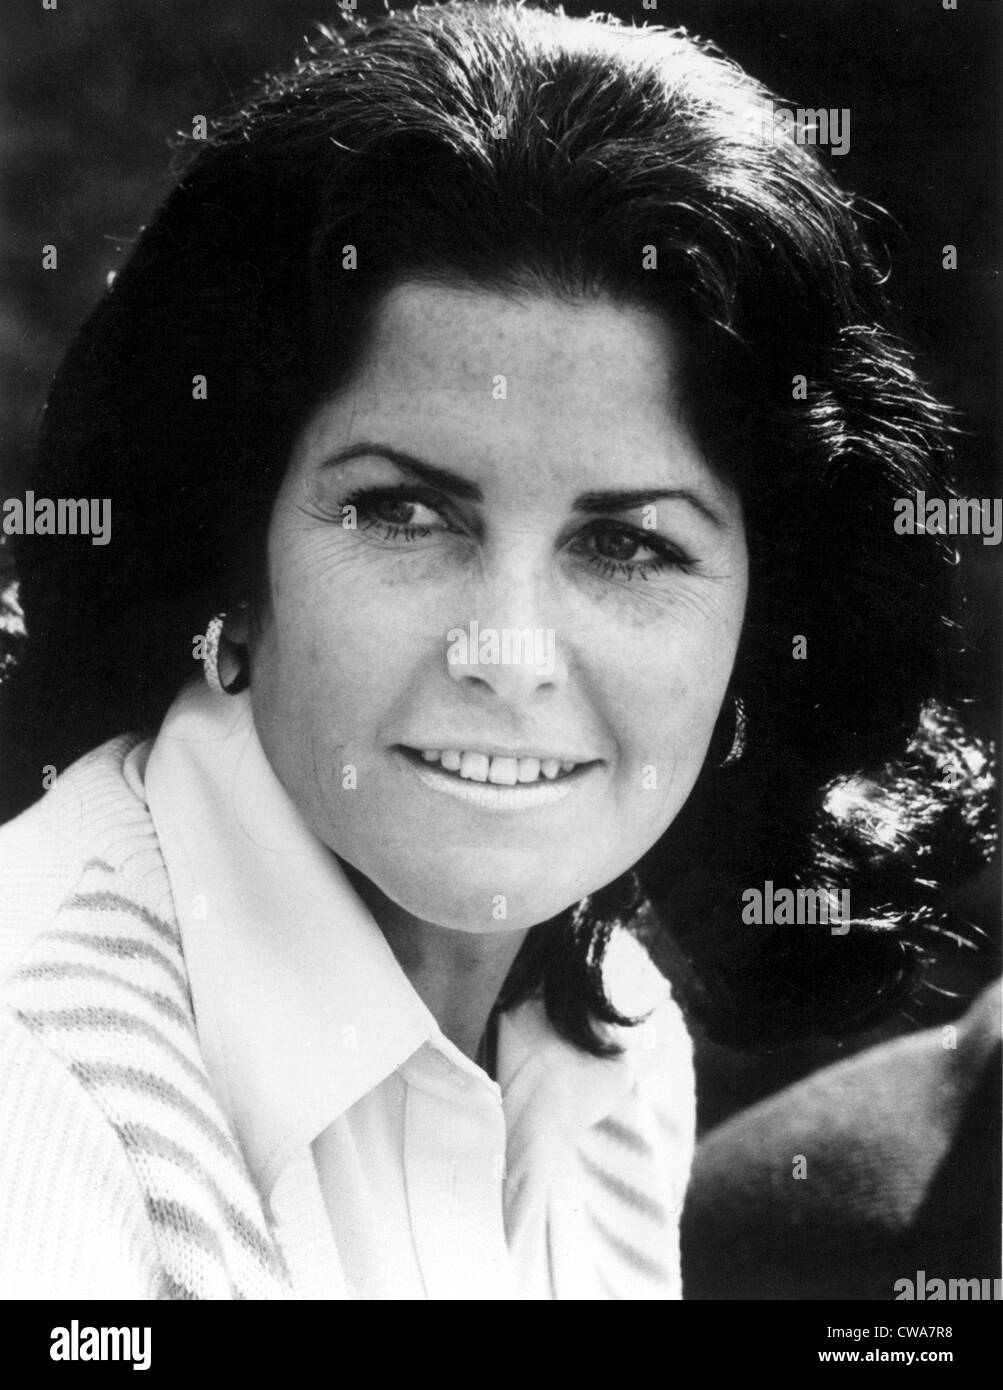 Judith Exner, frühere Geliebte von JFK, in einem Porträt von 1978... Höflichkeit: CSU Archive / Everett Collection Stockfoto